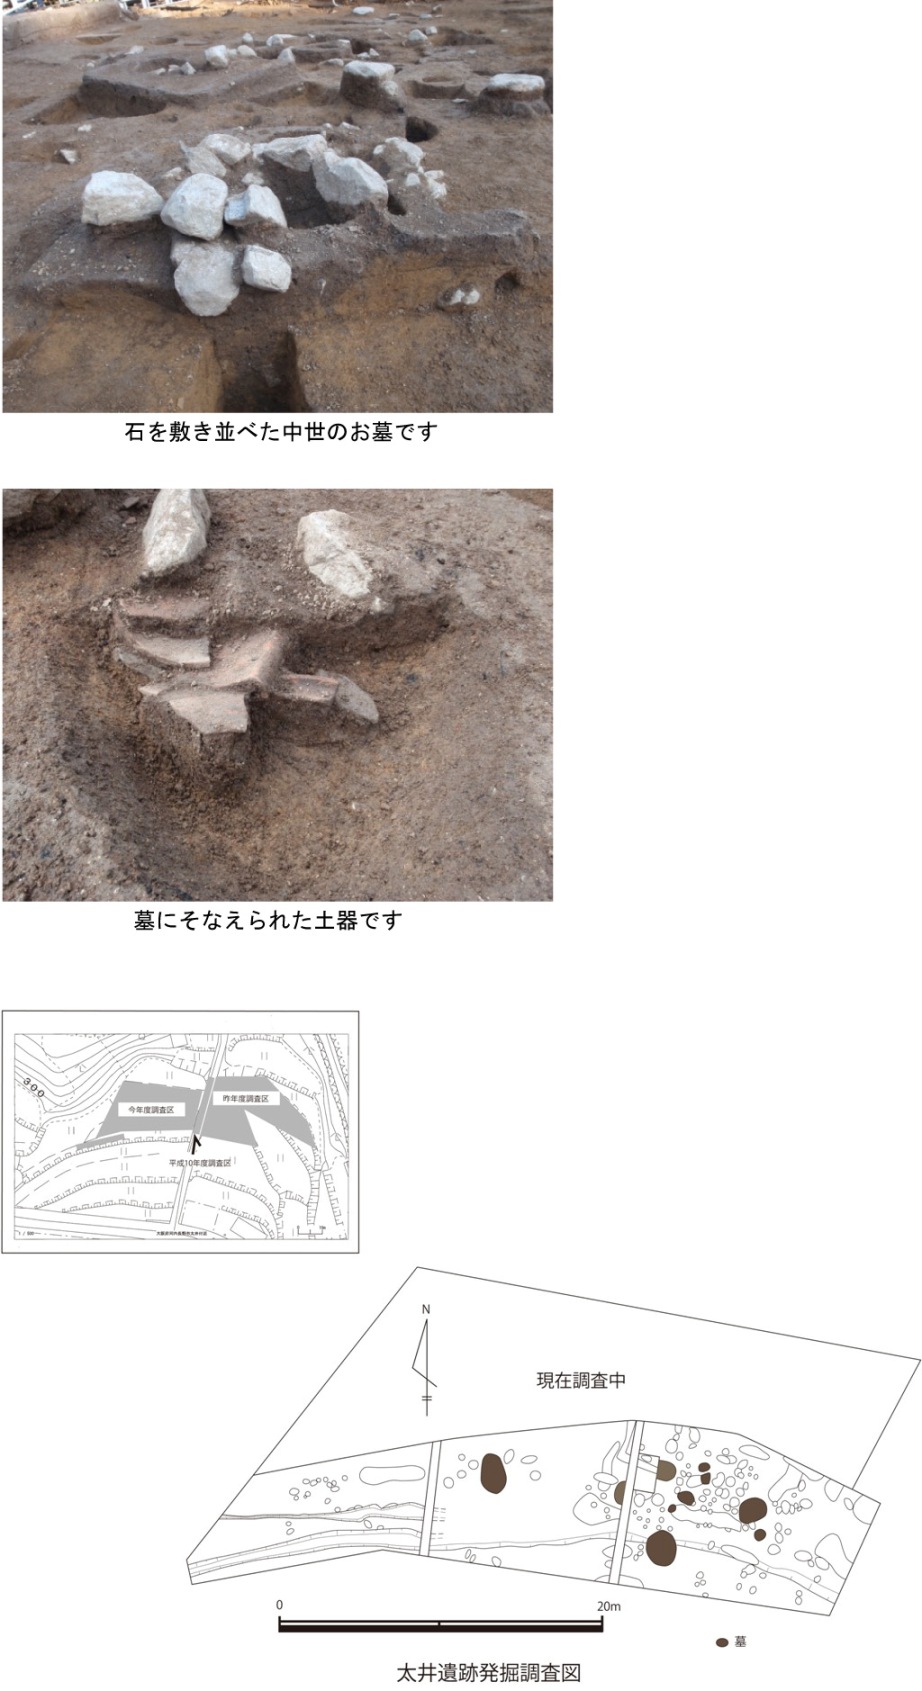 【写真と図面】石をしきならべたちゅうせいのおはか、墓にそなえられた土器　発掘調査全景図